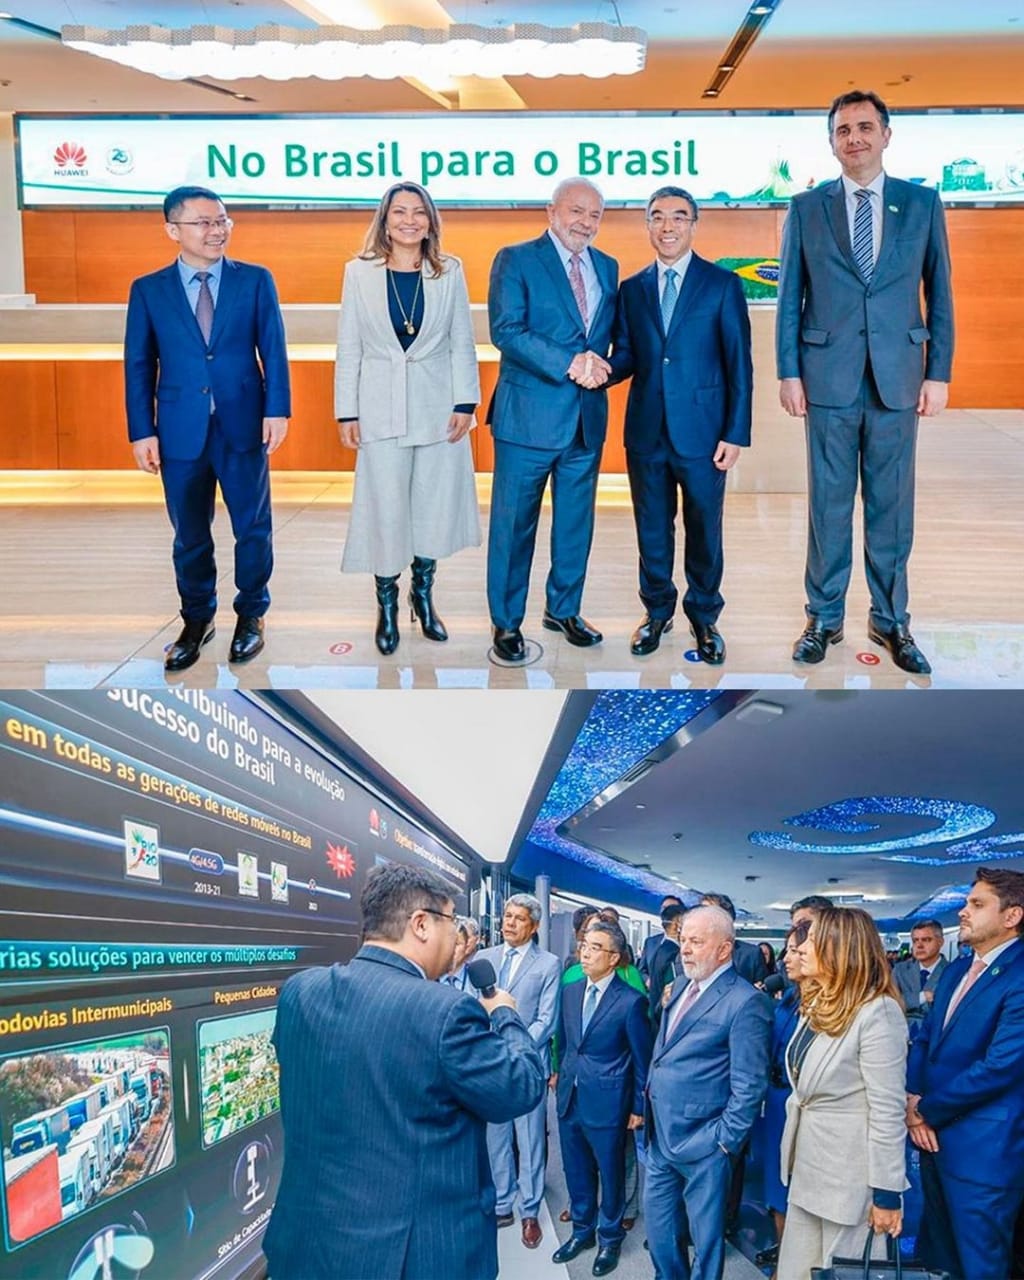 Huawei Brasil